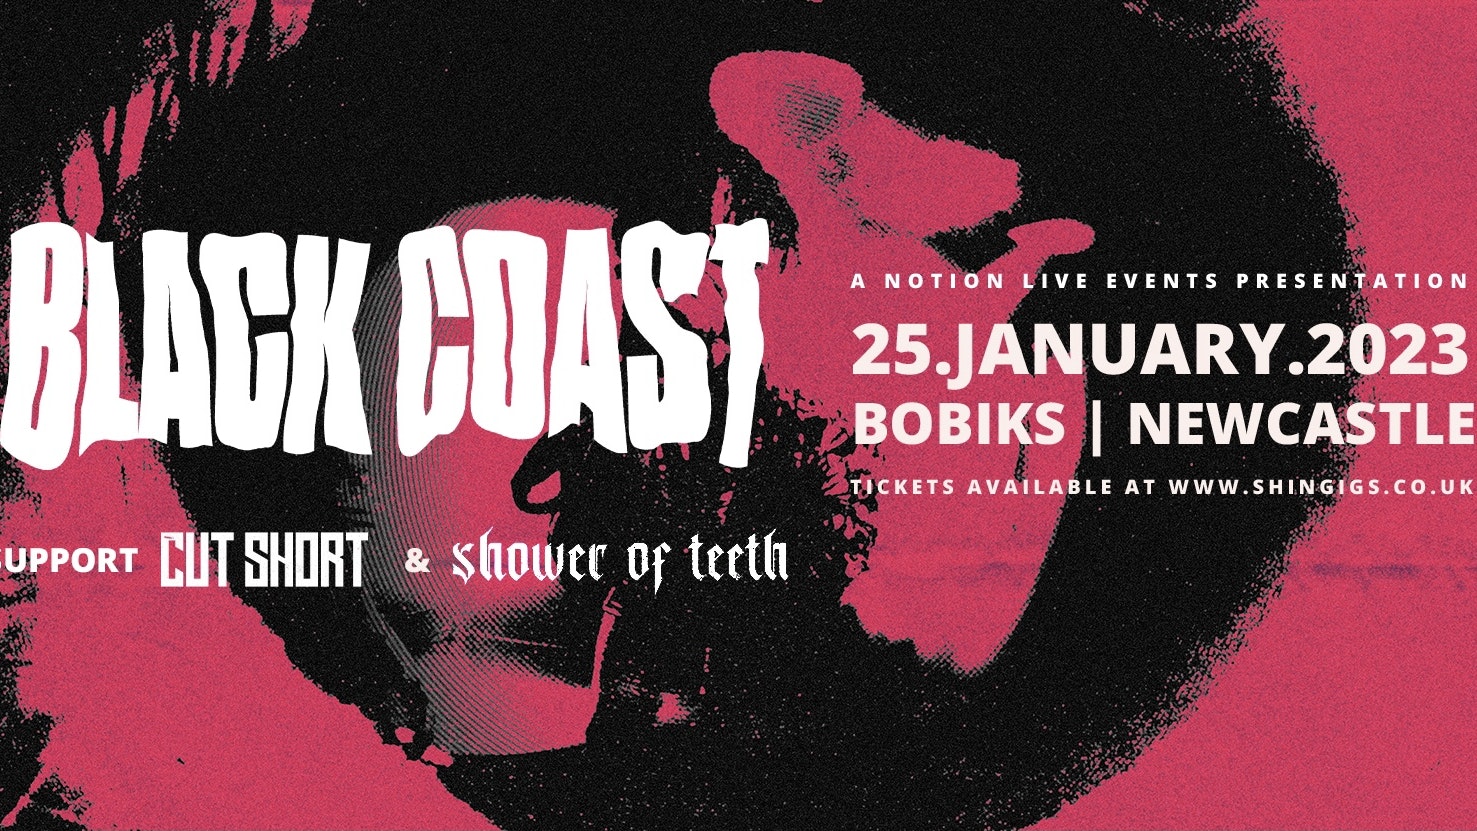 Black Coast + Cut Short & Shower Of Teeth